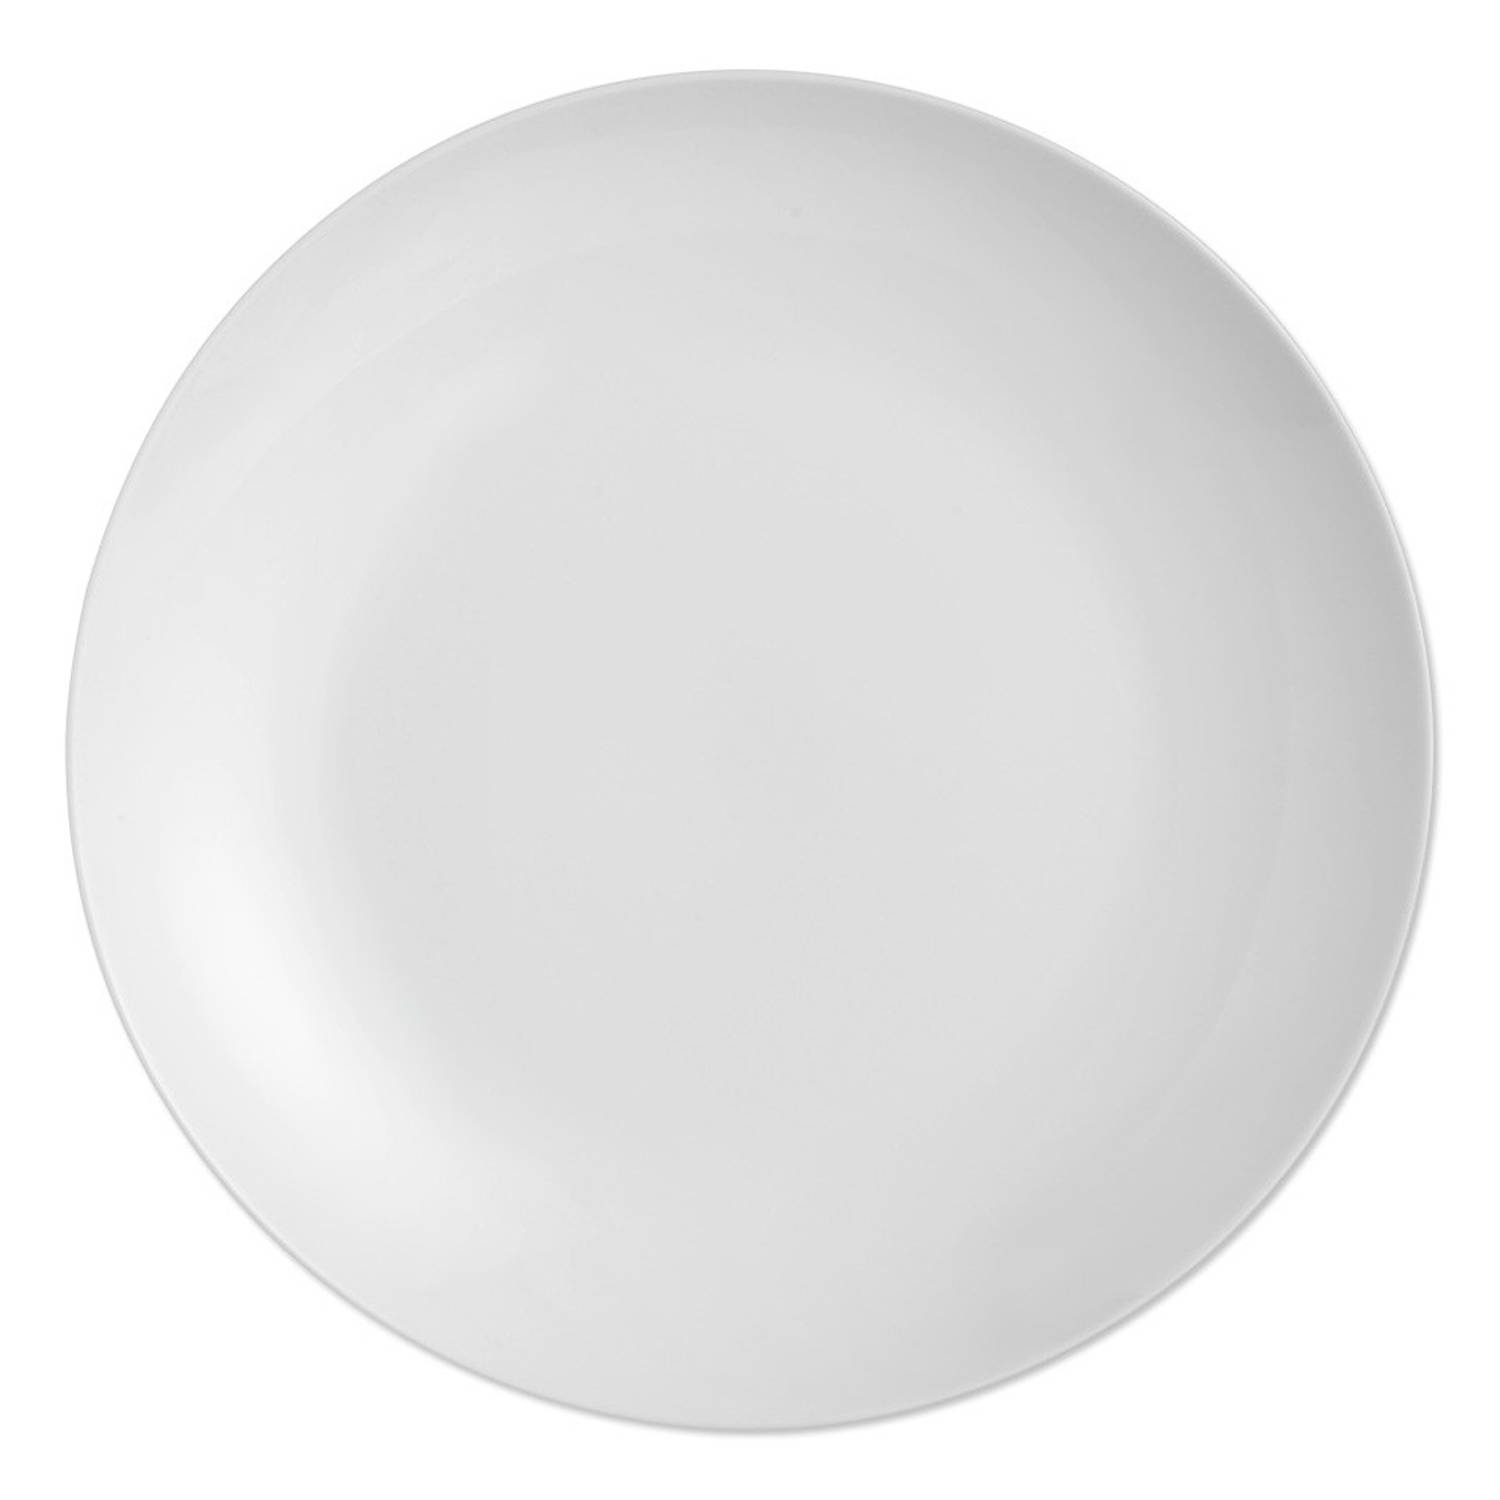 Raad draadloze ontwerp Ontbijtborden White Basic set van 4 | Blokker